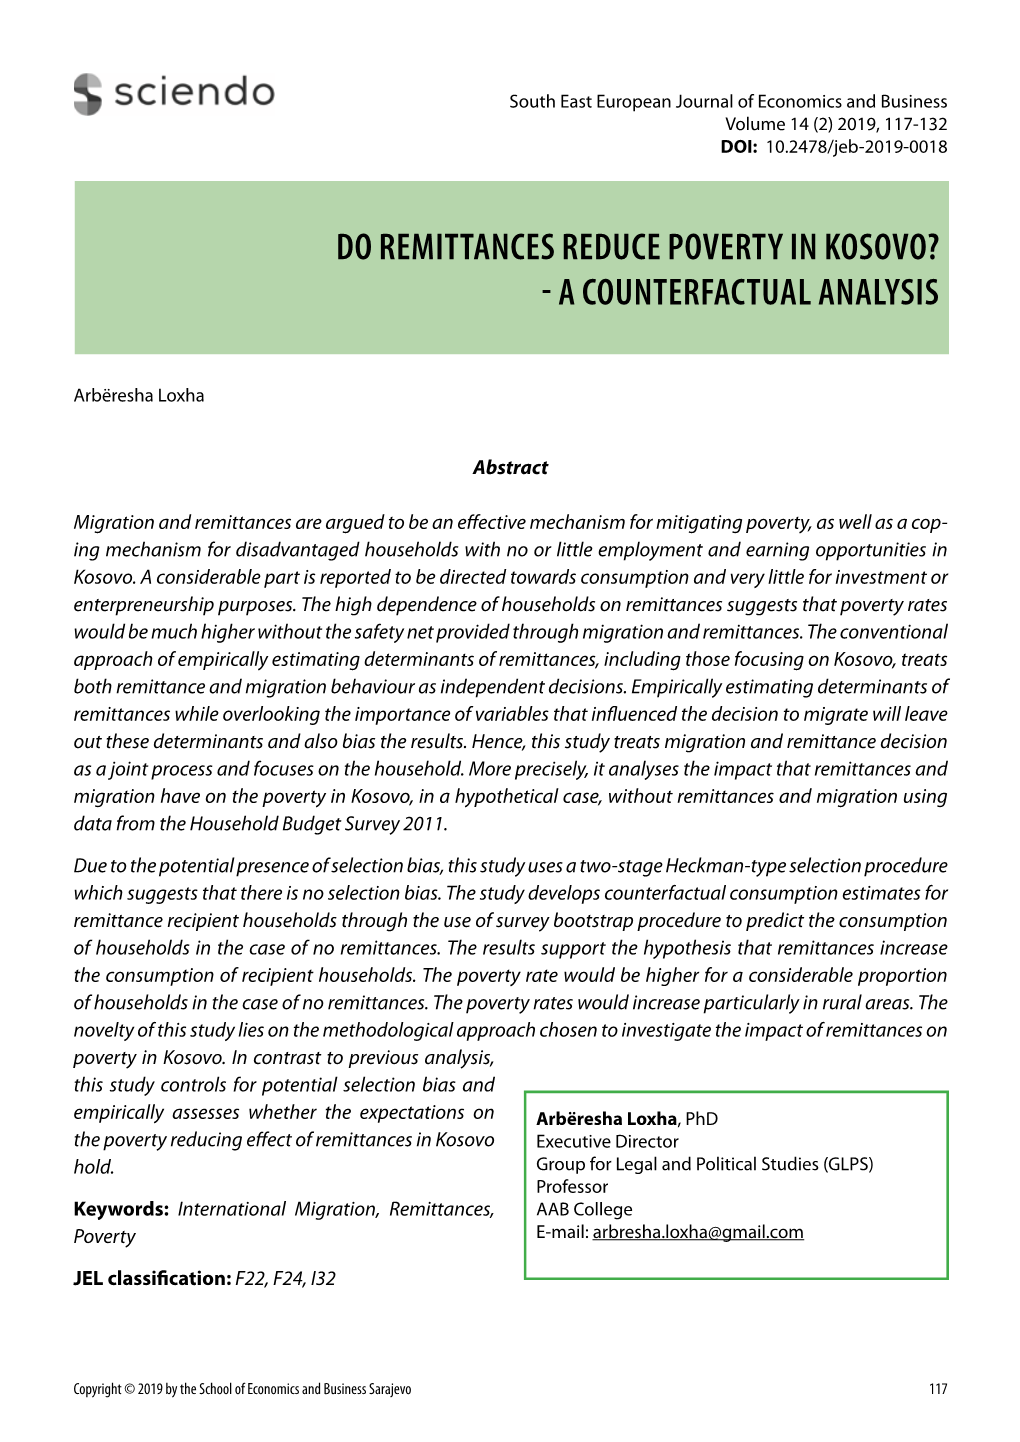 Do Remittances Reduce Poverty in Kosovo? - a Counterfactual Analysis